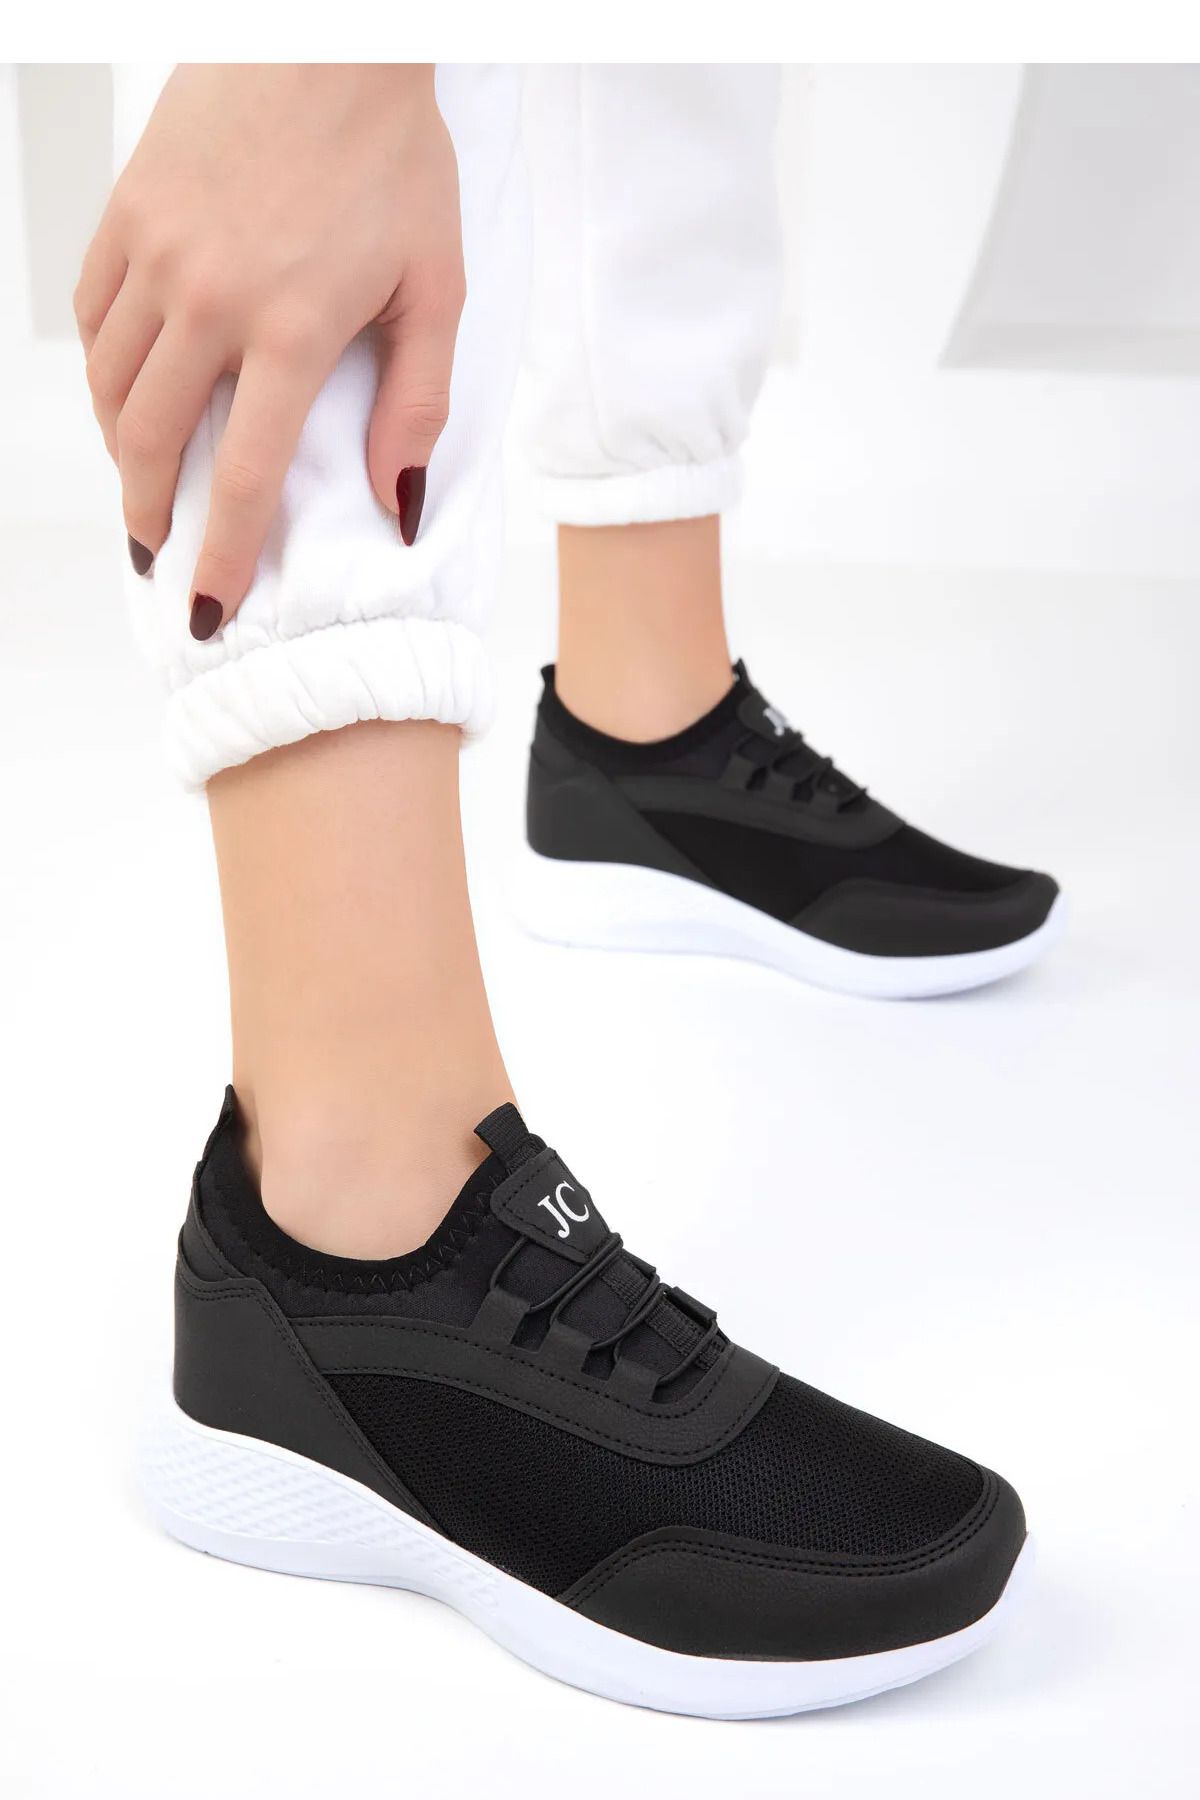 TOBAİ Tam Ortapedik Kadın Siyah Beyaz Sneaker Rahat Günlük Spor Ayakkabı